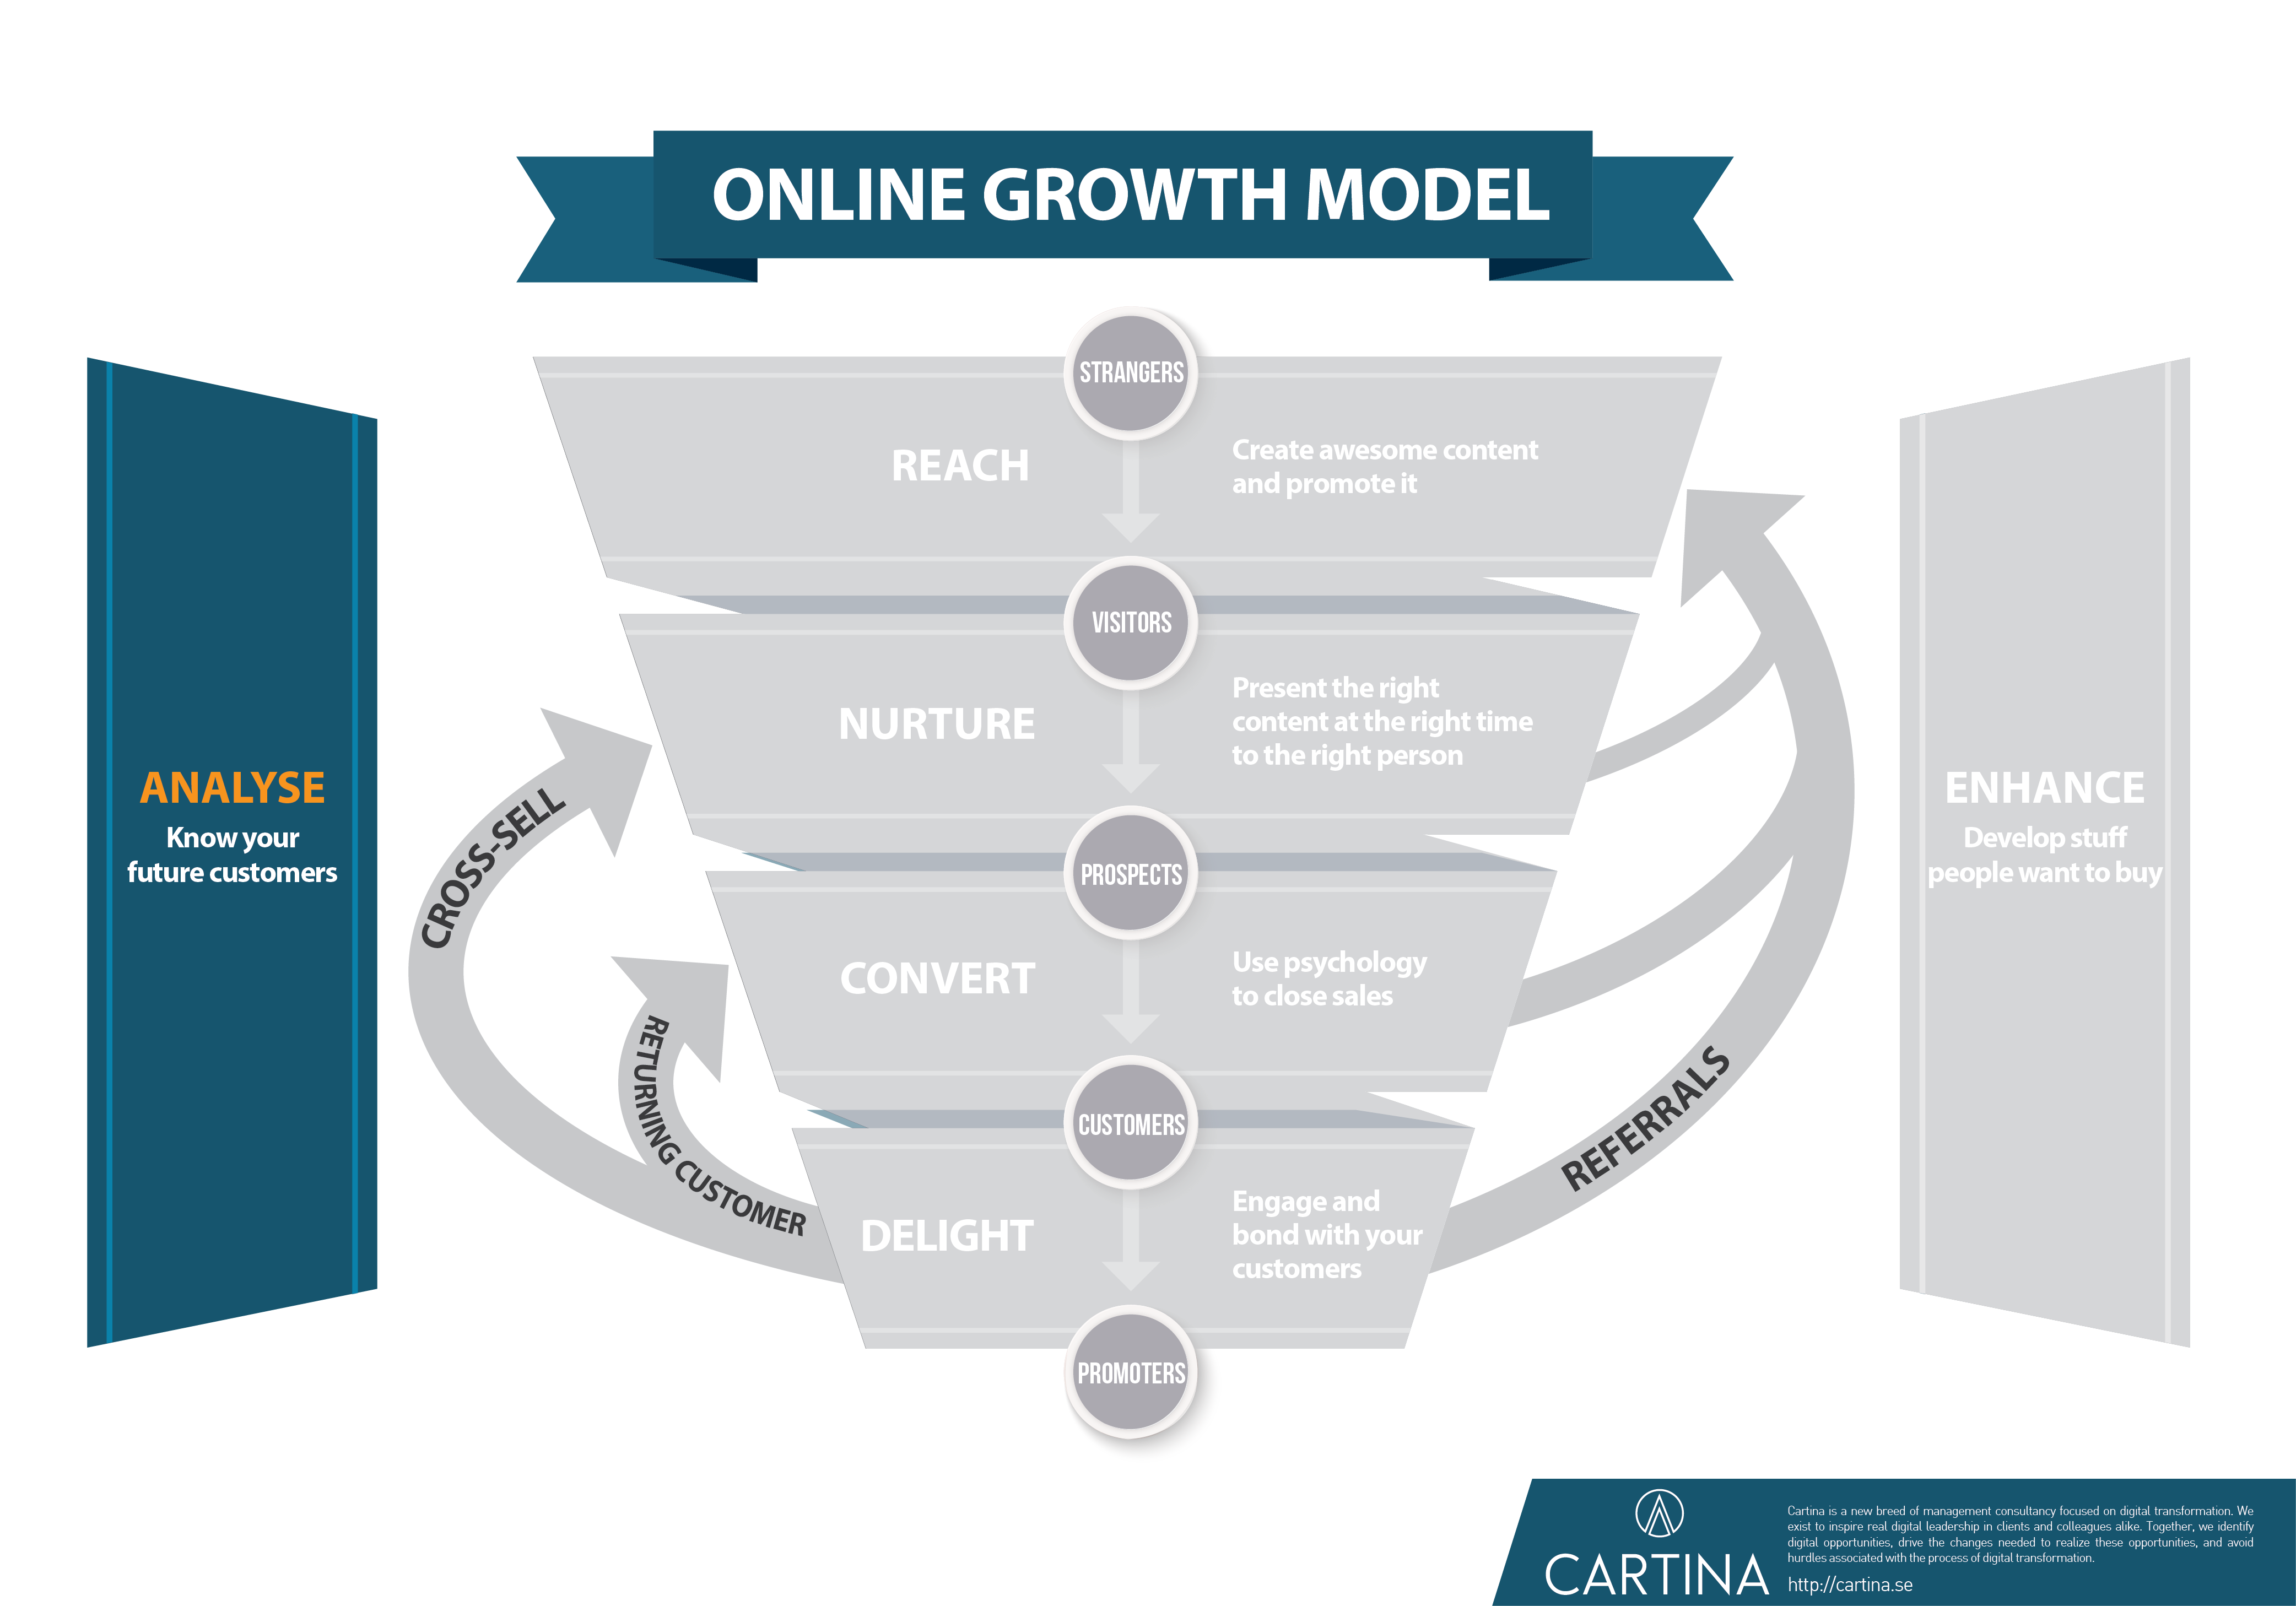 Growth model - Analyze step